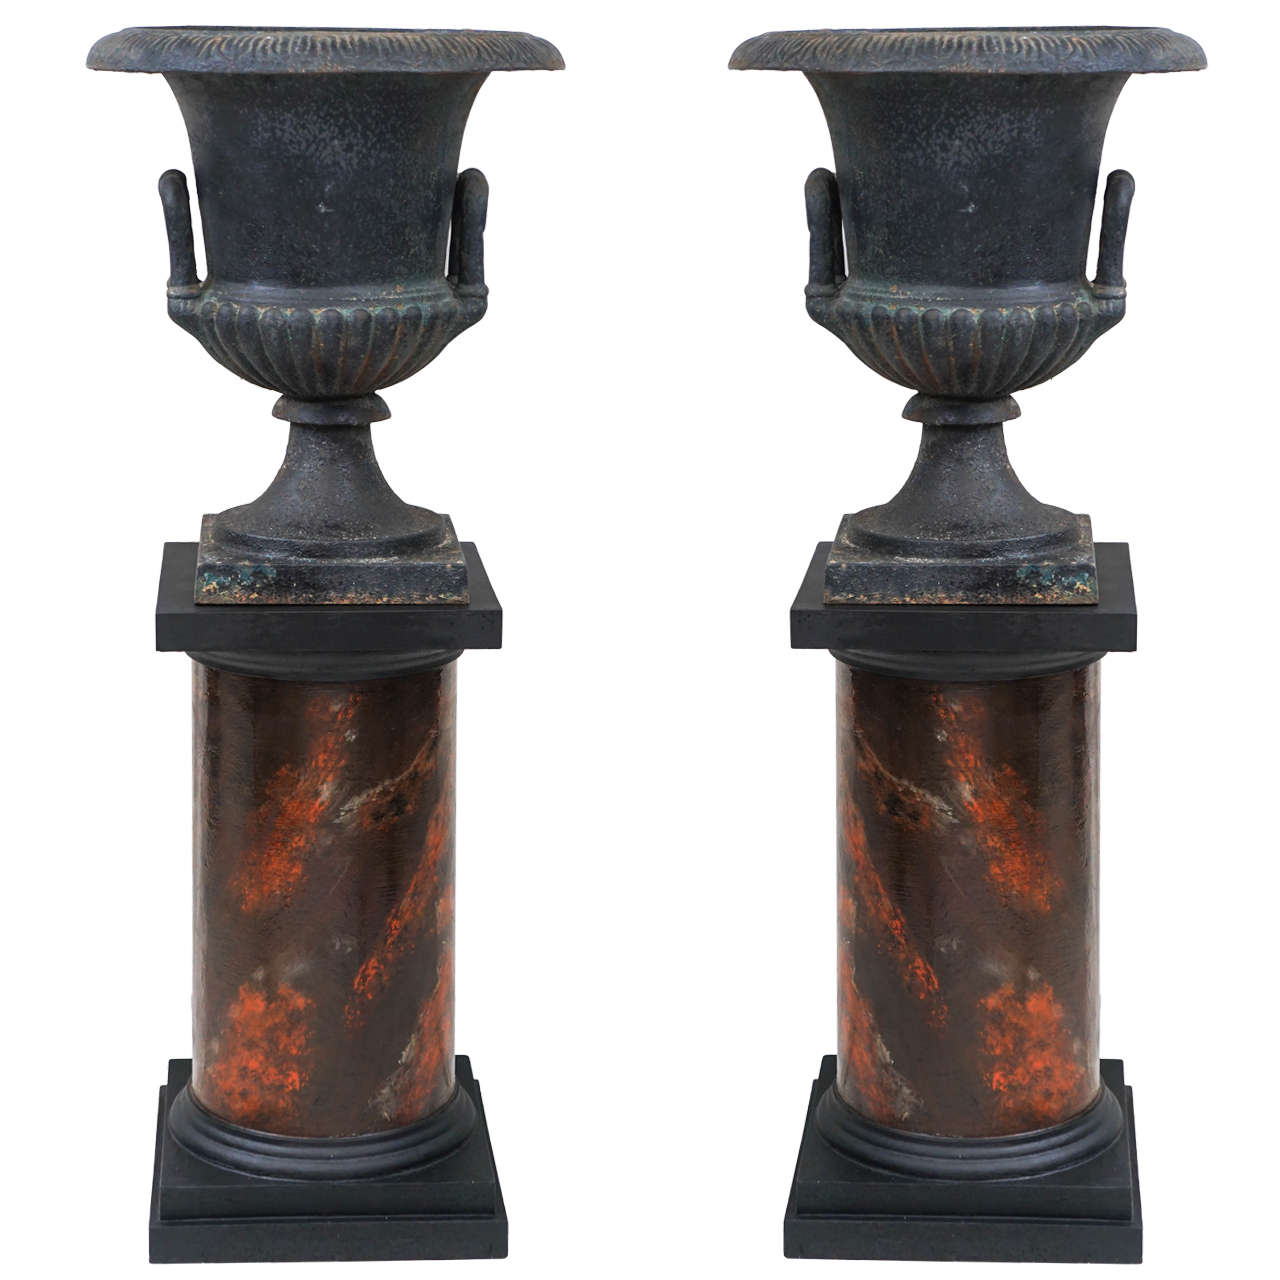 Pair of 19th Century Cast Iron Urns on Marbleized Pedestals